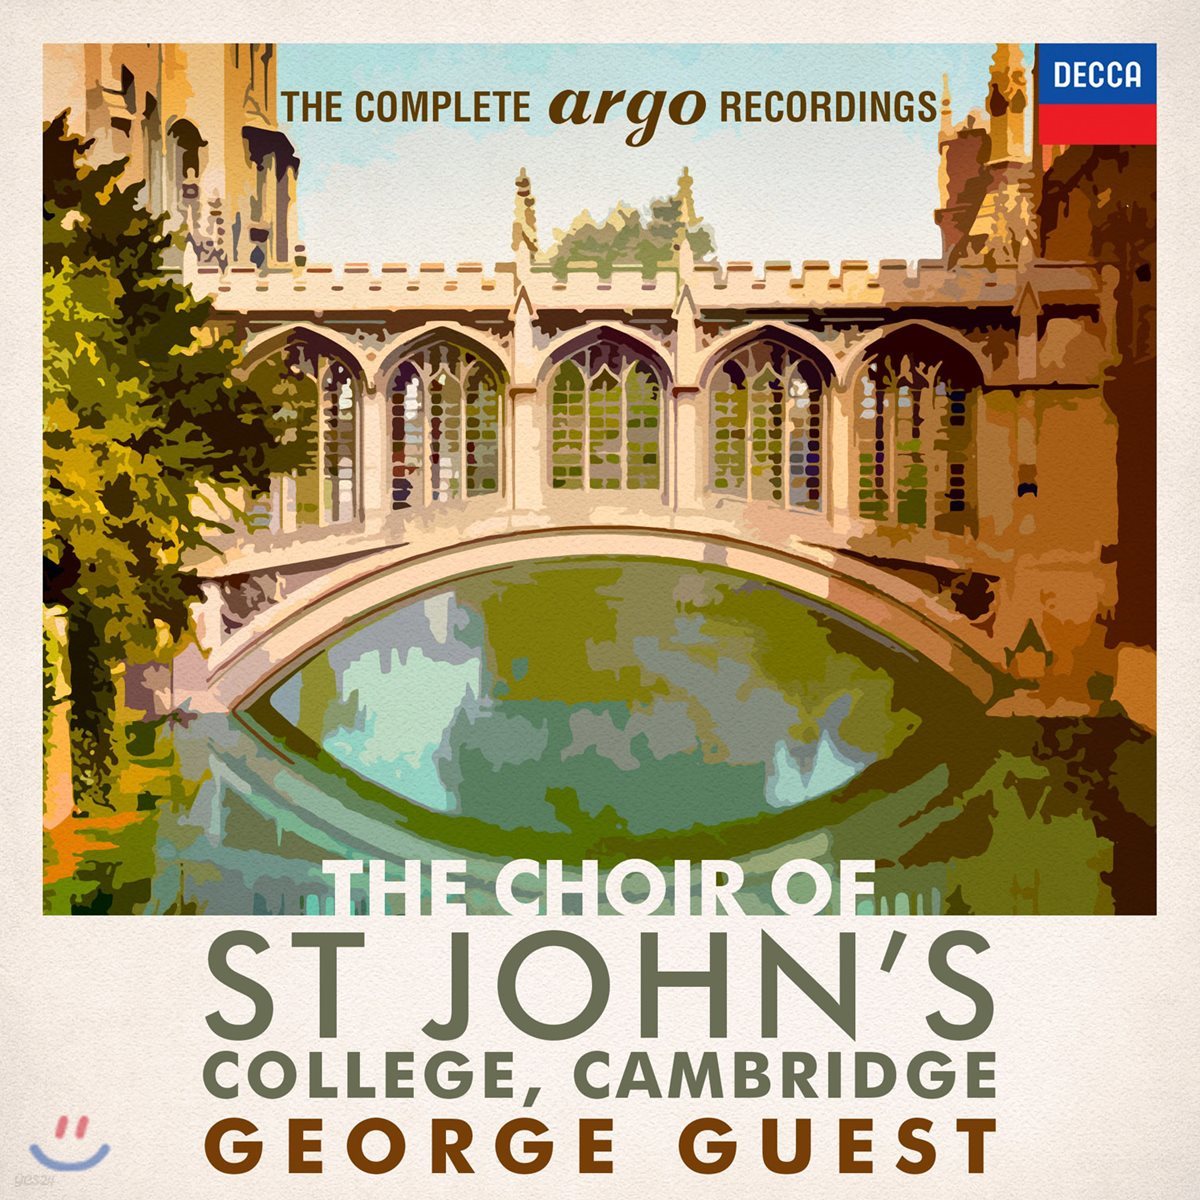 캠브리지 세인트 존스 칼리지 합창단 - 아르고 녹음 전집 (The Choir of St. John's College Cambridge - The Complete Argo Recordings)